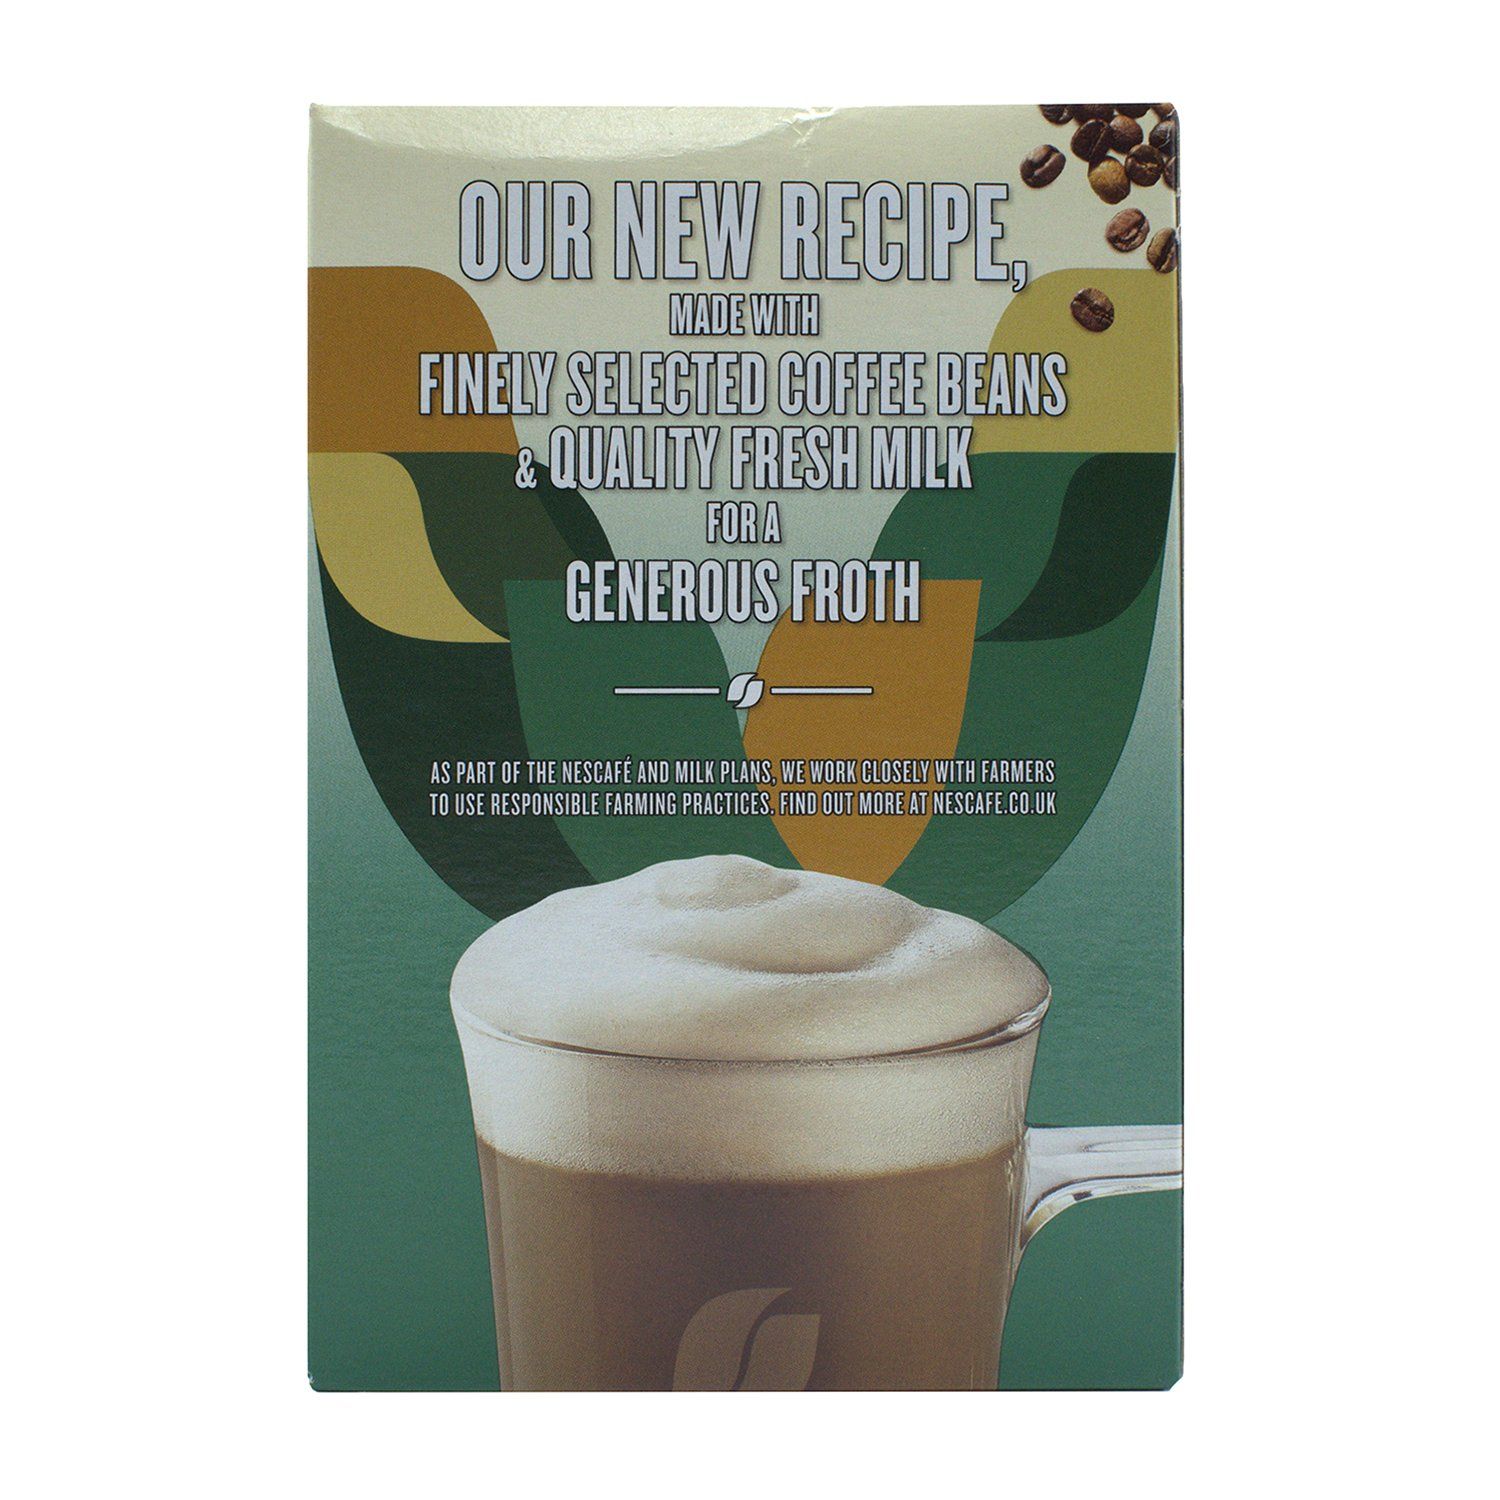 Nestle Nescafe Gold Irish Latte Image